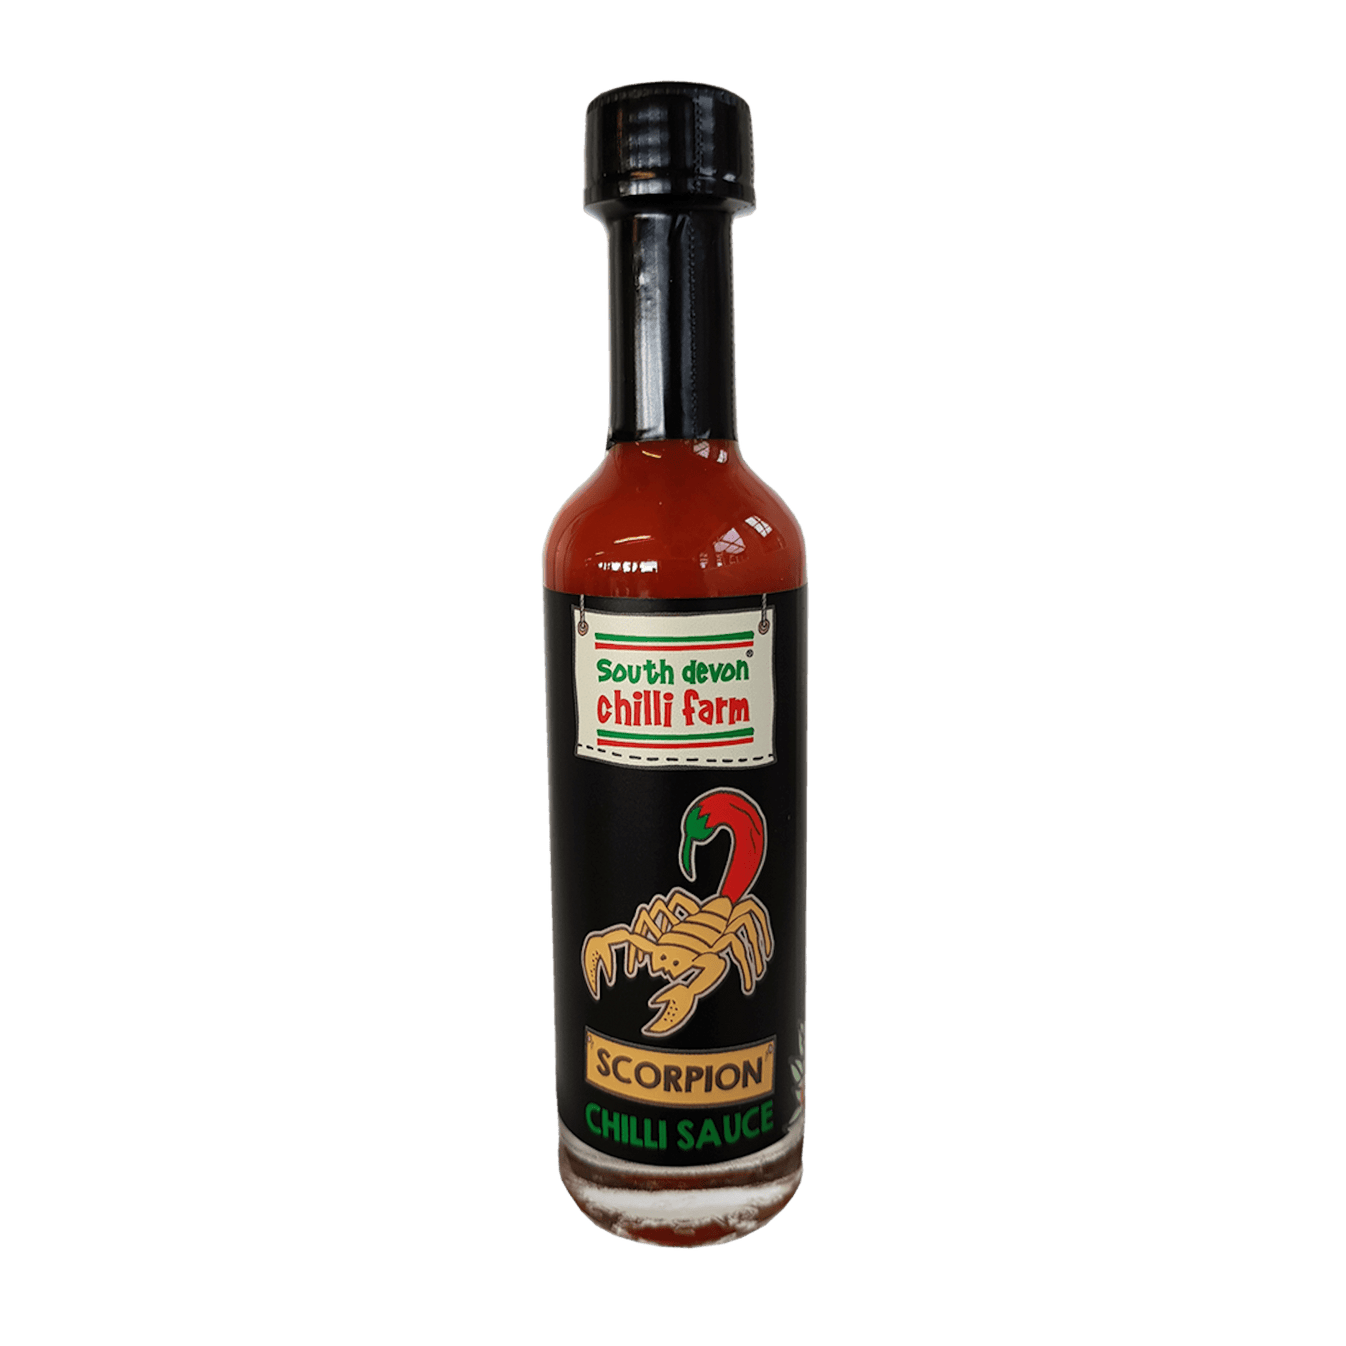 Scorpion Chilli Sauce 50ml South Devon Chilli Farm 